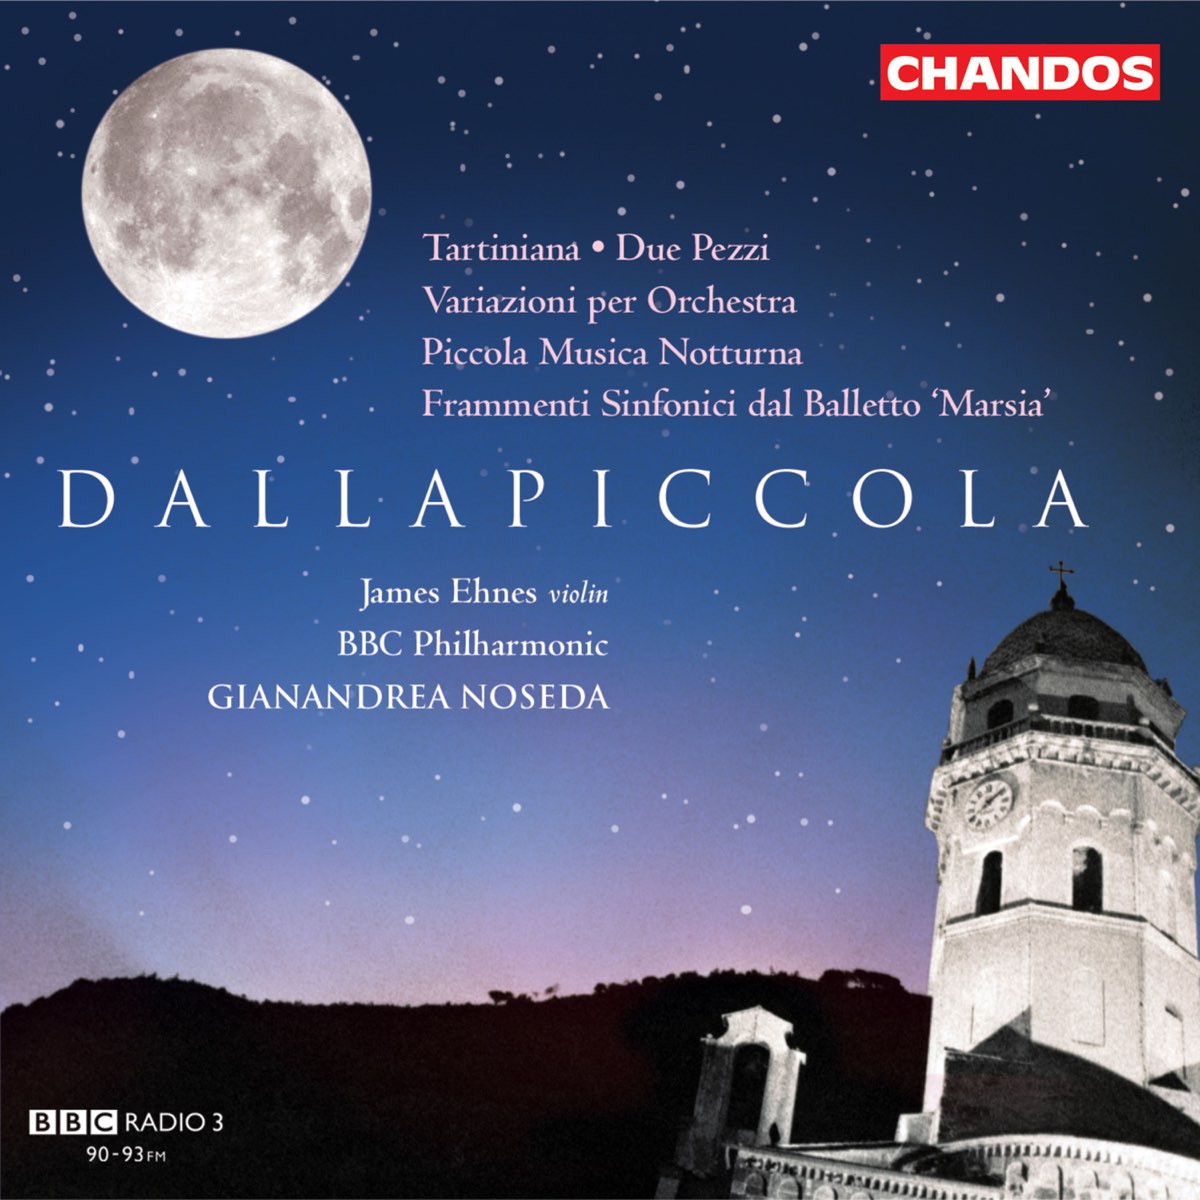 ‎ジャナンドレア・ノセダ, BBCフィルハーモニック・オーケストラ & ジェイムズ・エーネスの「Dallapiccola